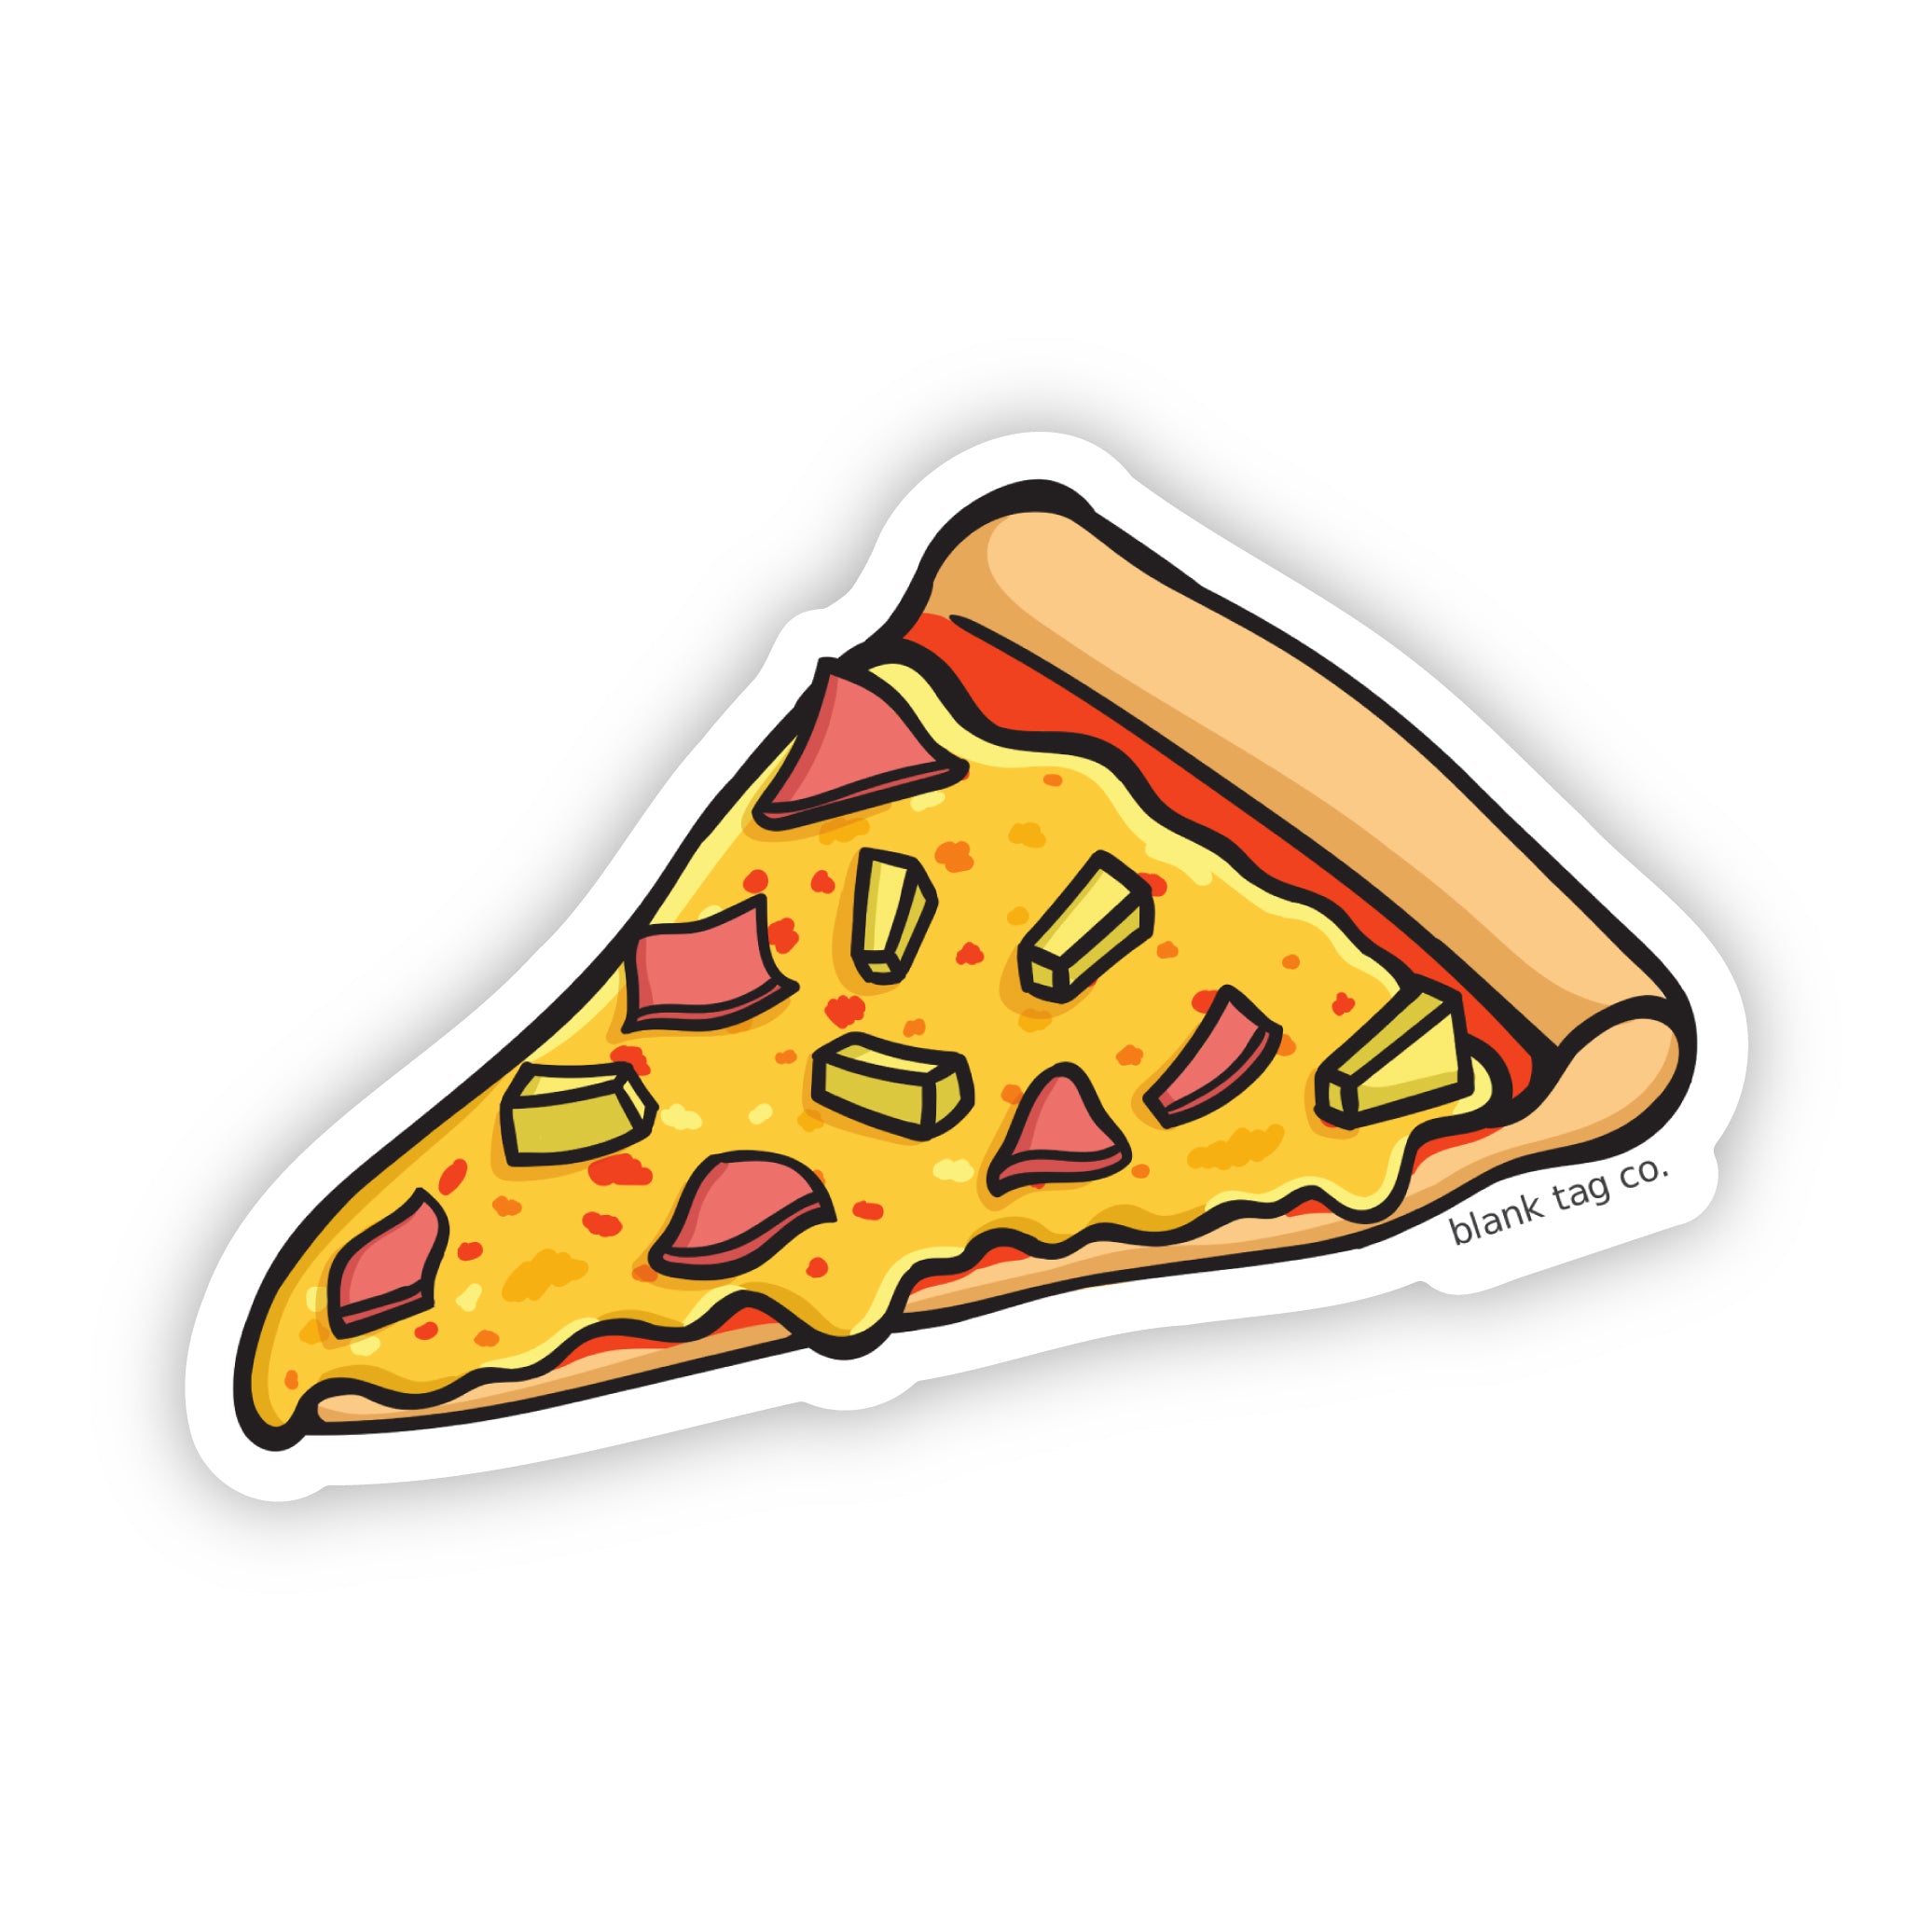 The Hawaiian Pizza Slice Sticker